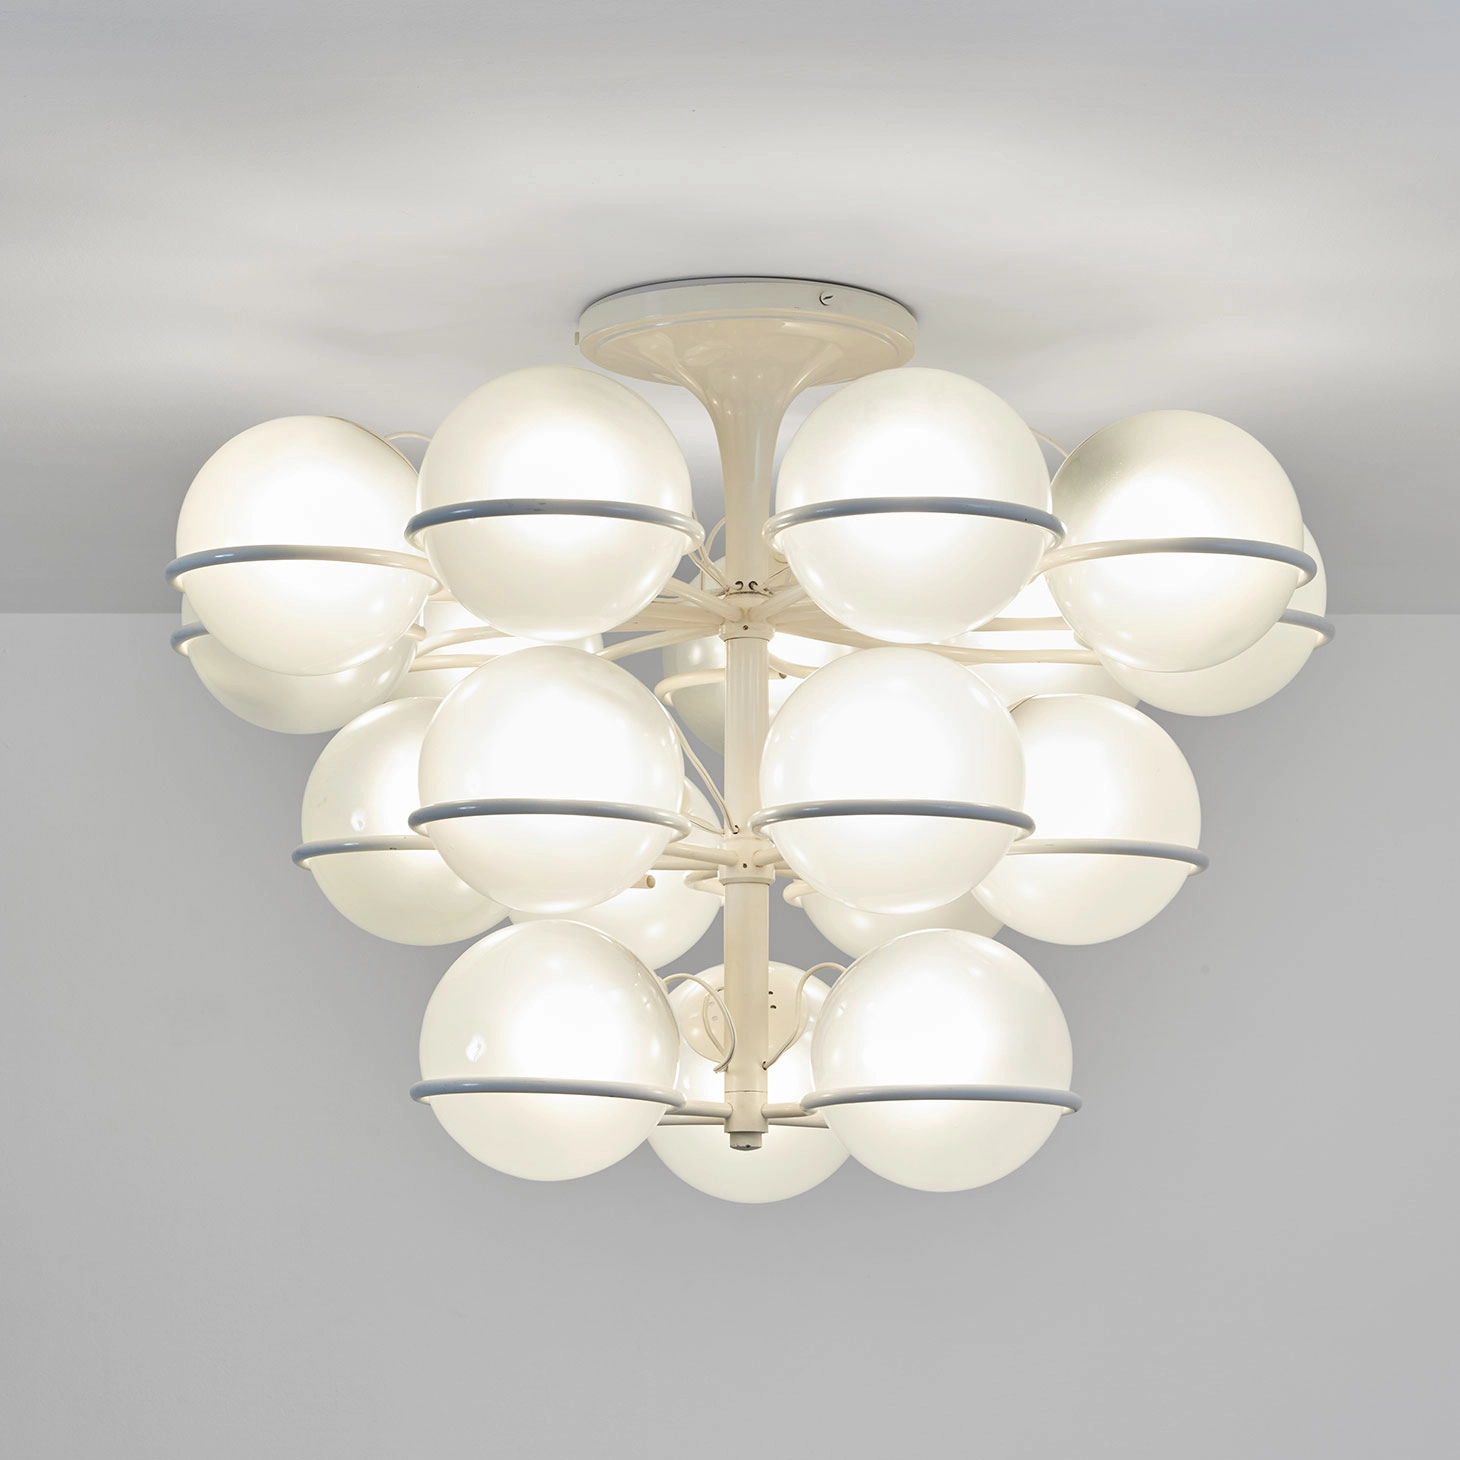 2042/18 (white) - Gino Sarfatti - Ceiling light - Galerie kreo